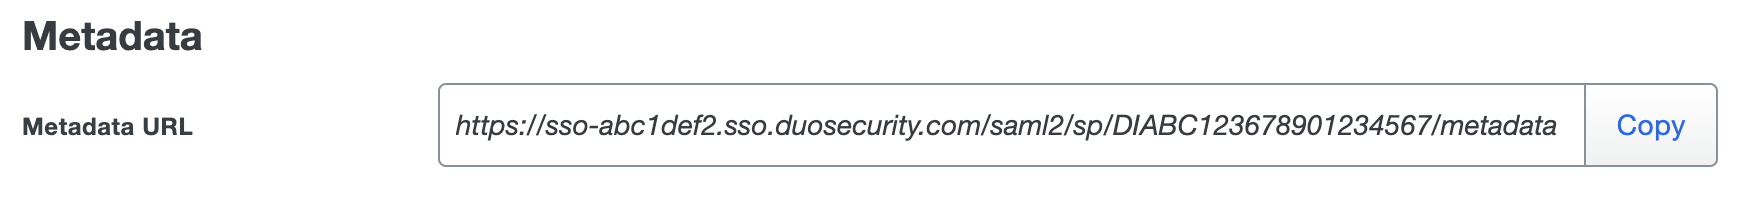 Duo Metadata URL